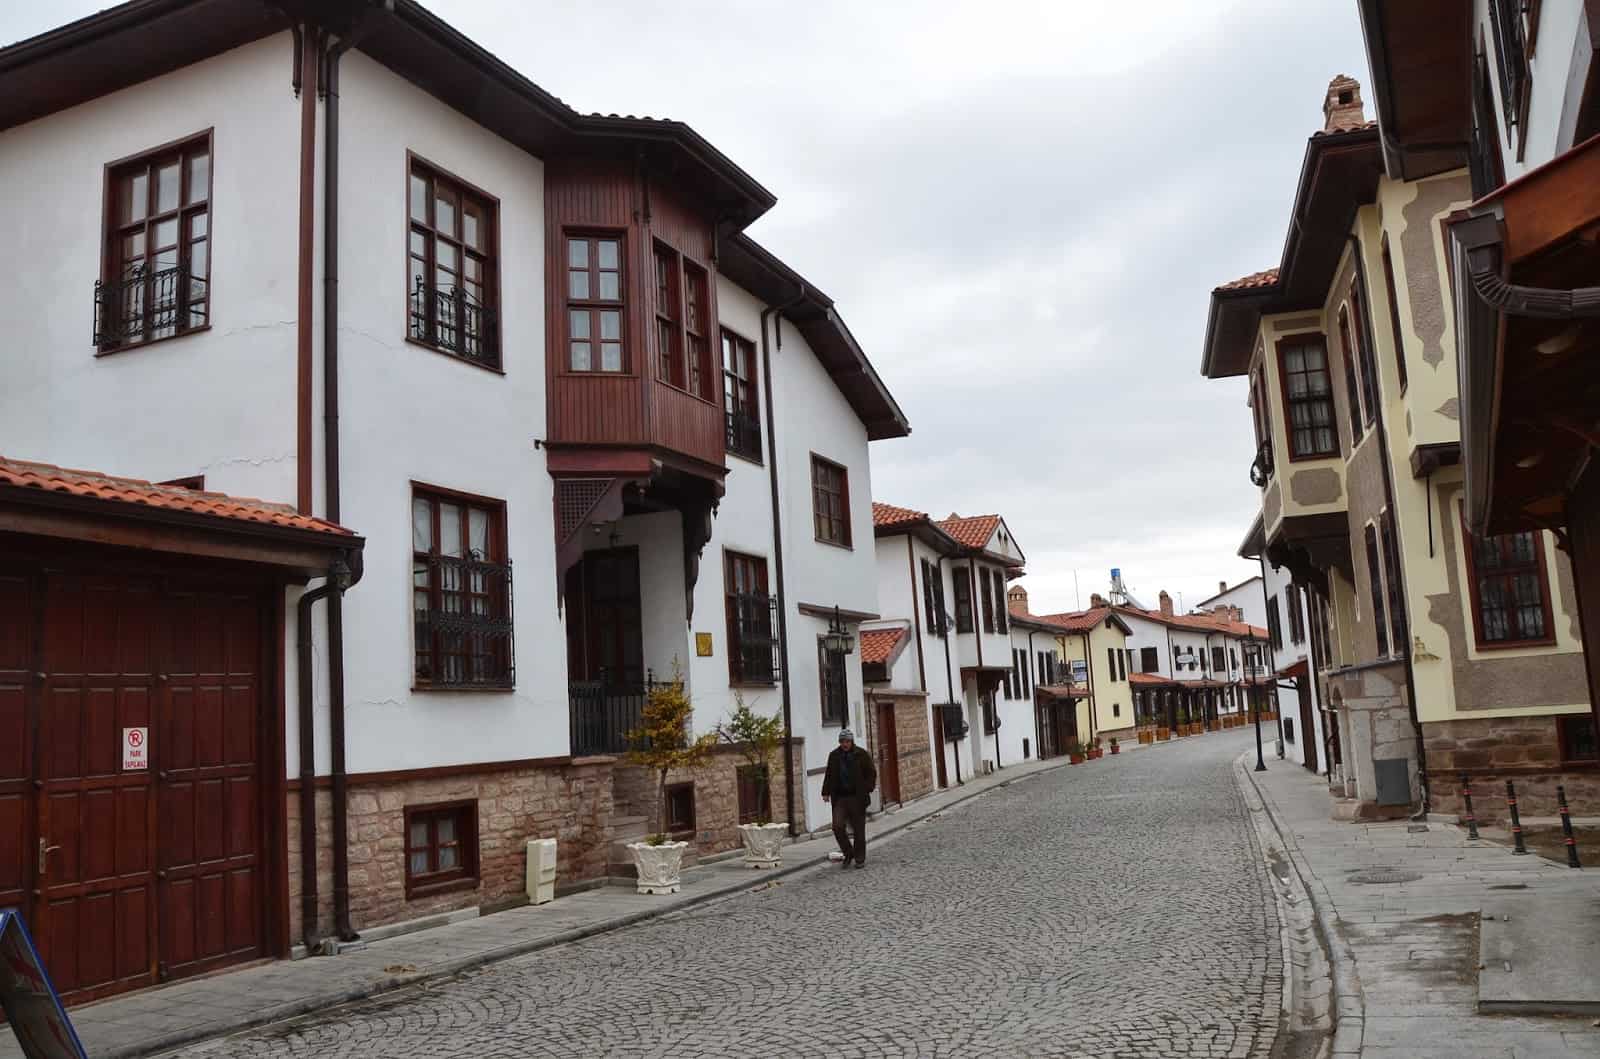 Mengüc Street in Konya, Turkey